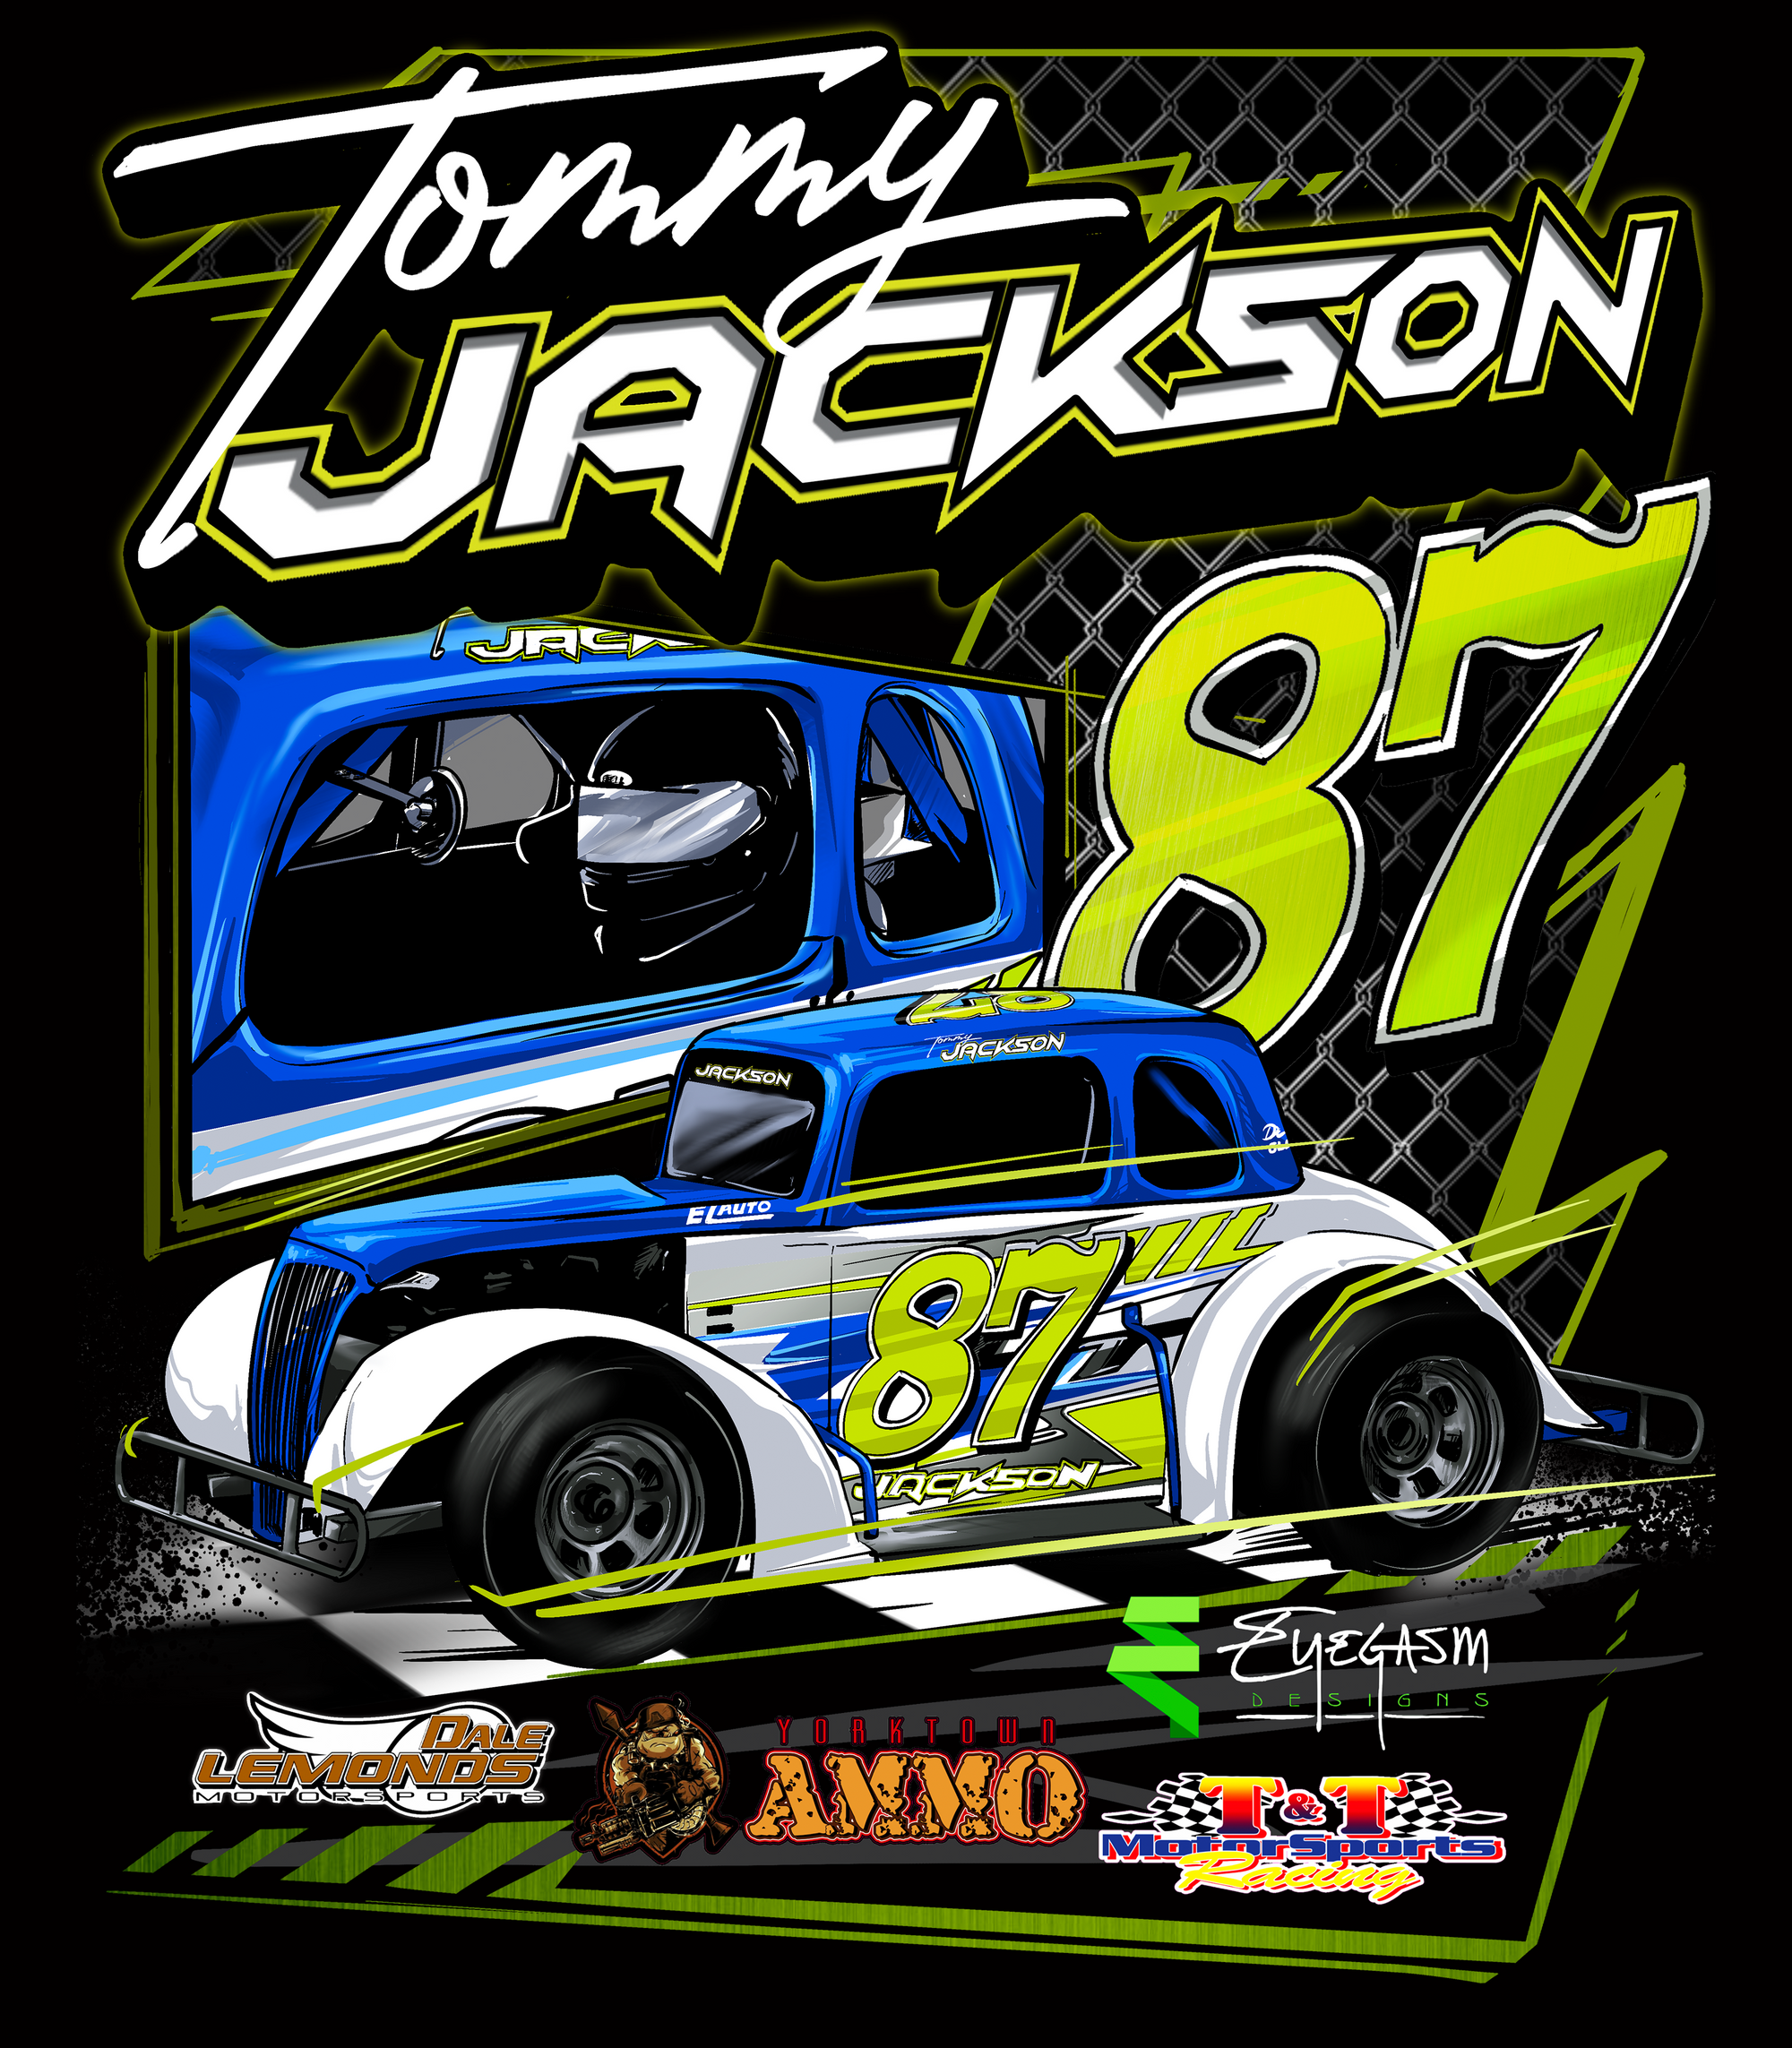 Tommy Jackson